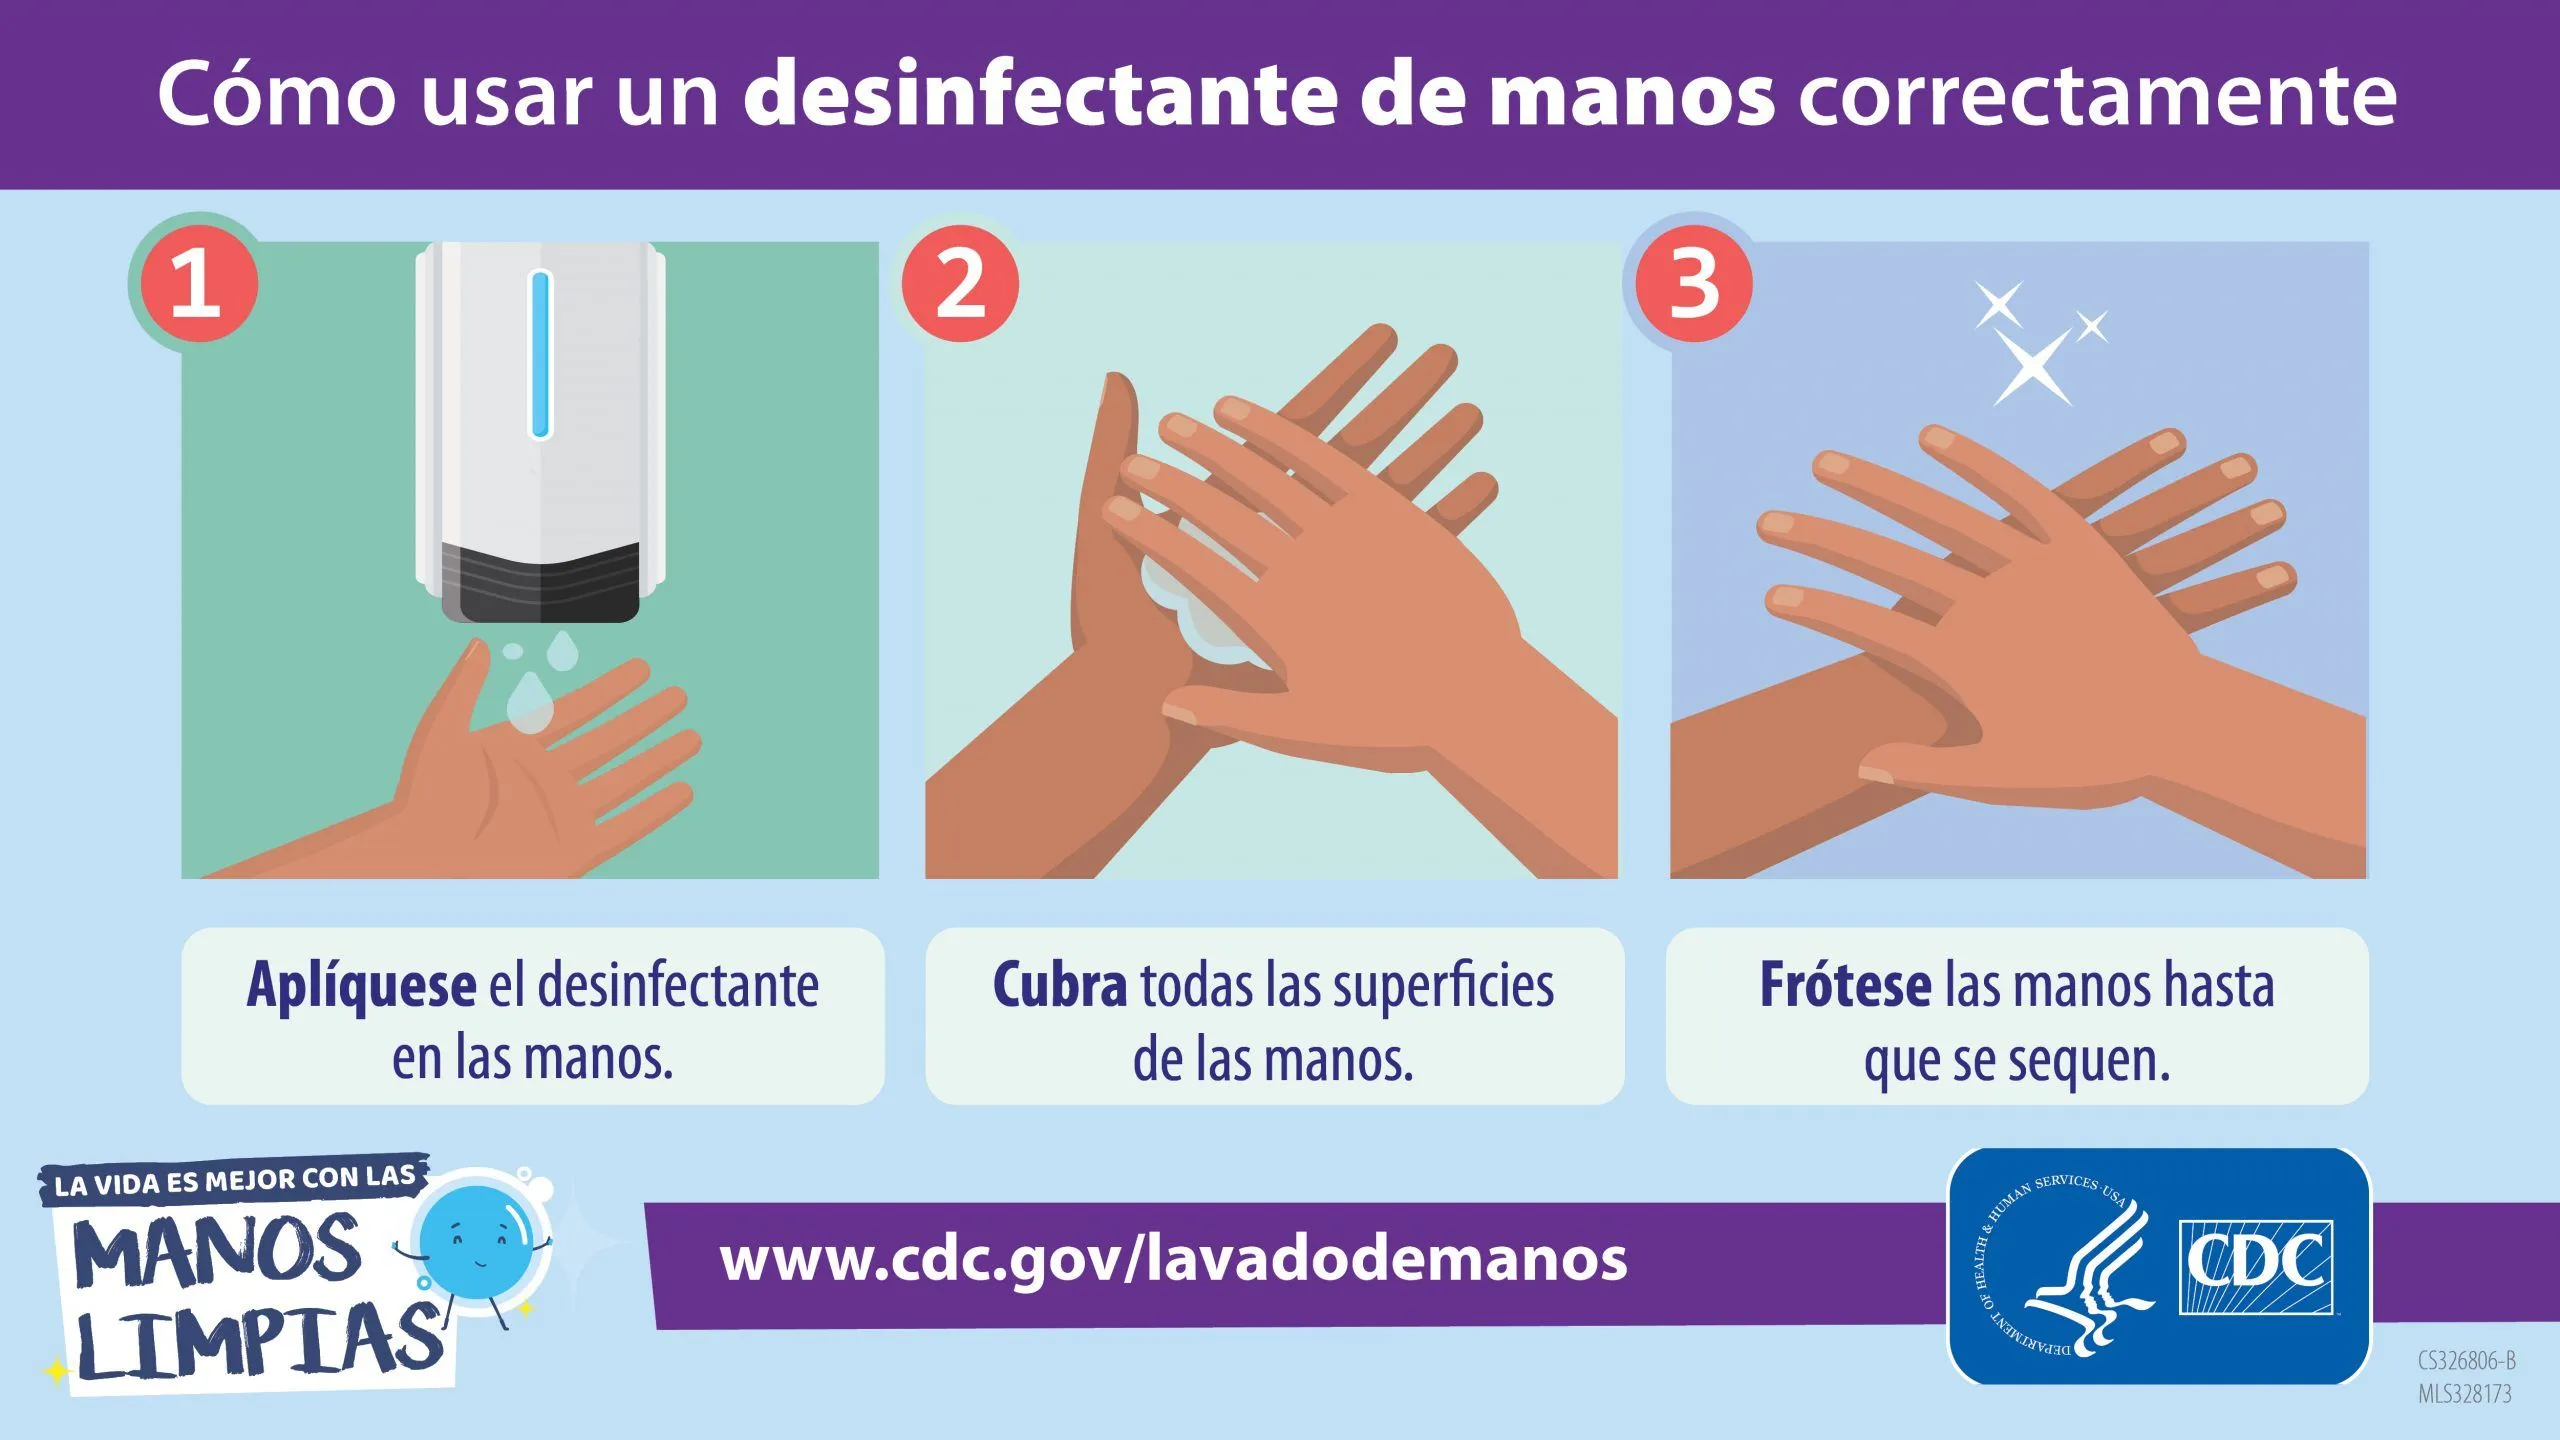 Gráficas para medios sociales | El lavado de las manos | CDC